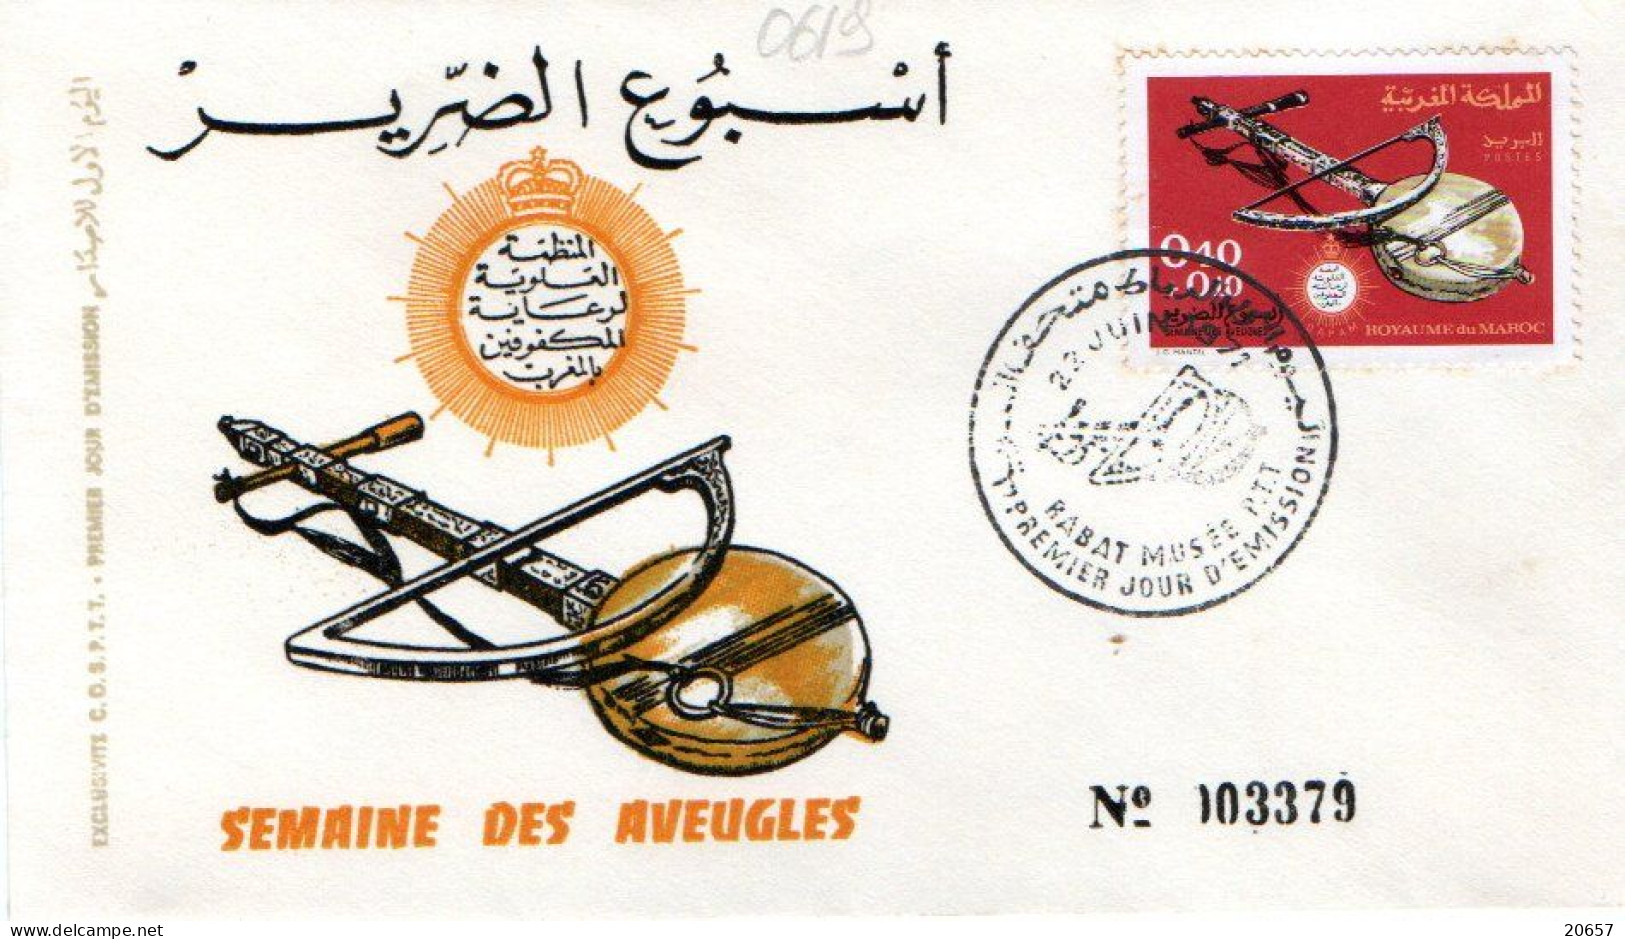 Maroc Al Maghrib 0619 Fdc Cécité, Semaine Des Aveugles, Instrument De Musique à Cordes - Handicaps